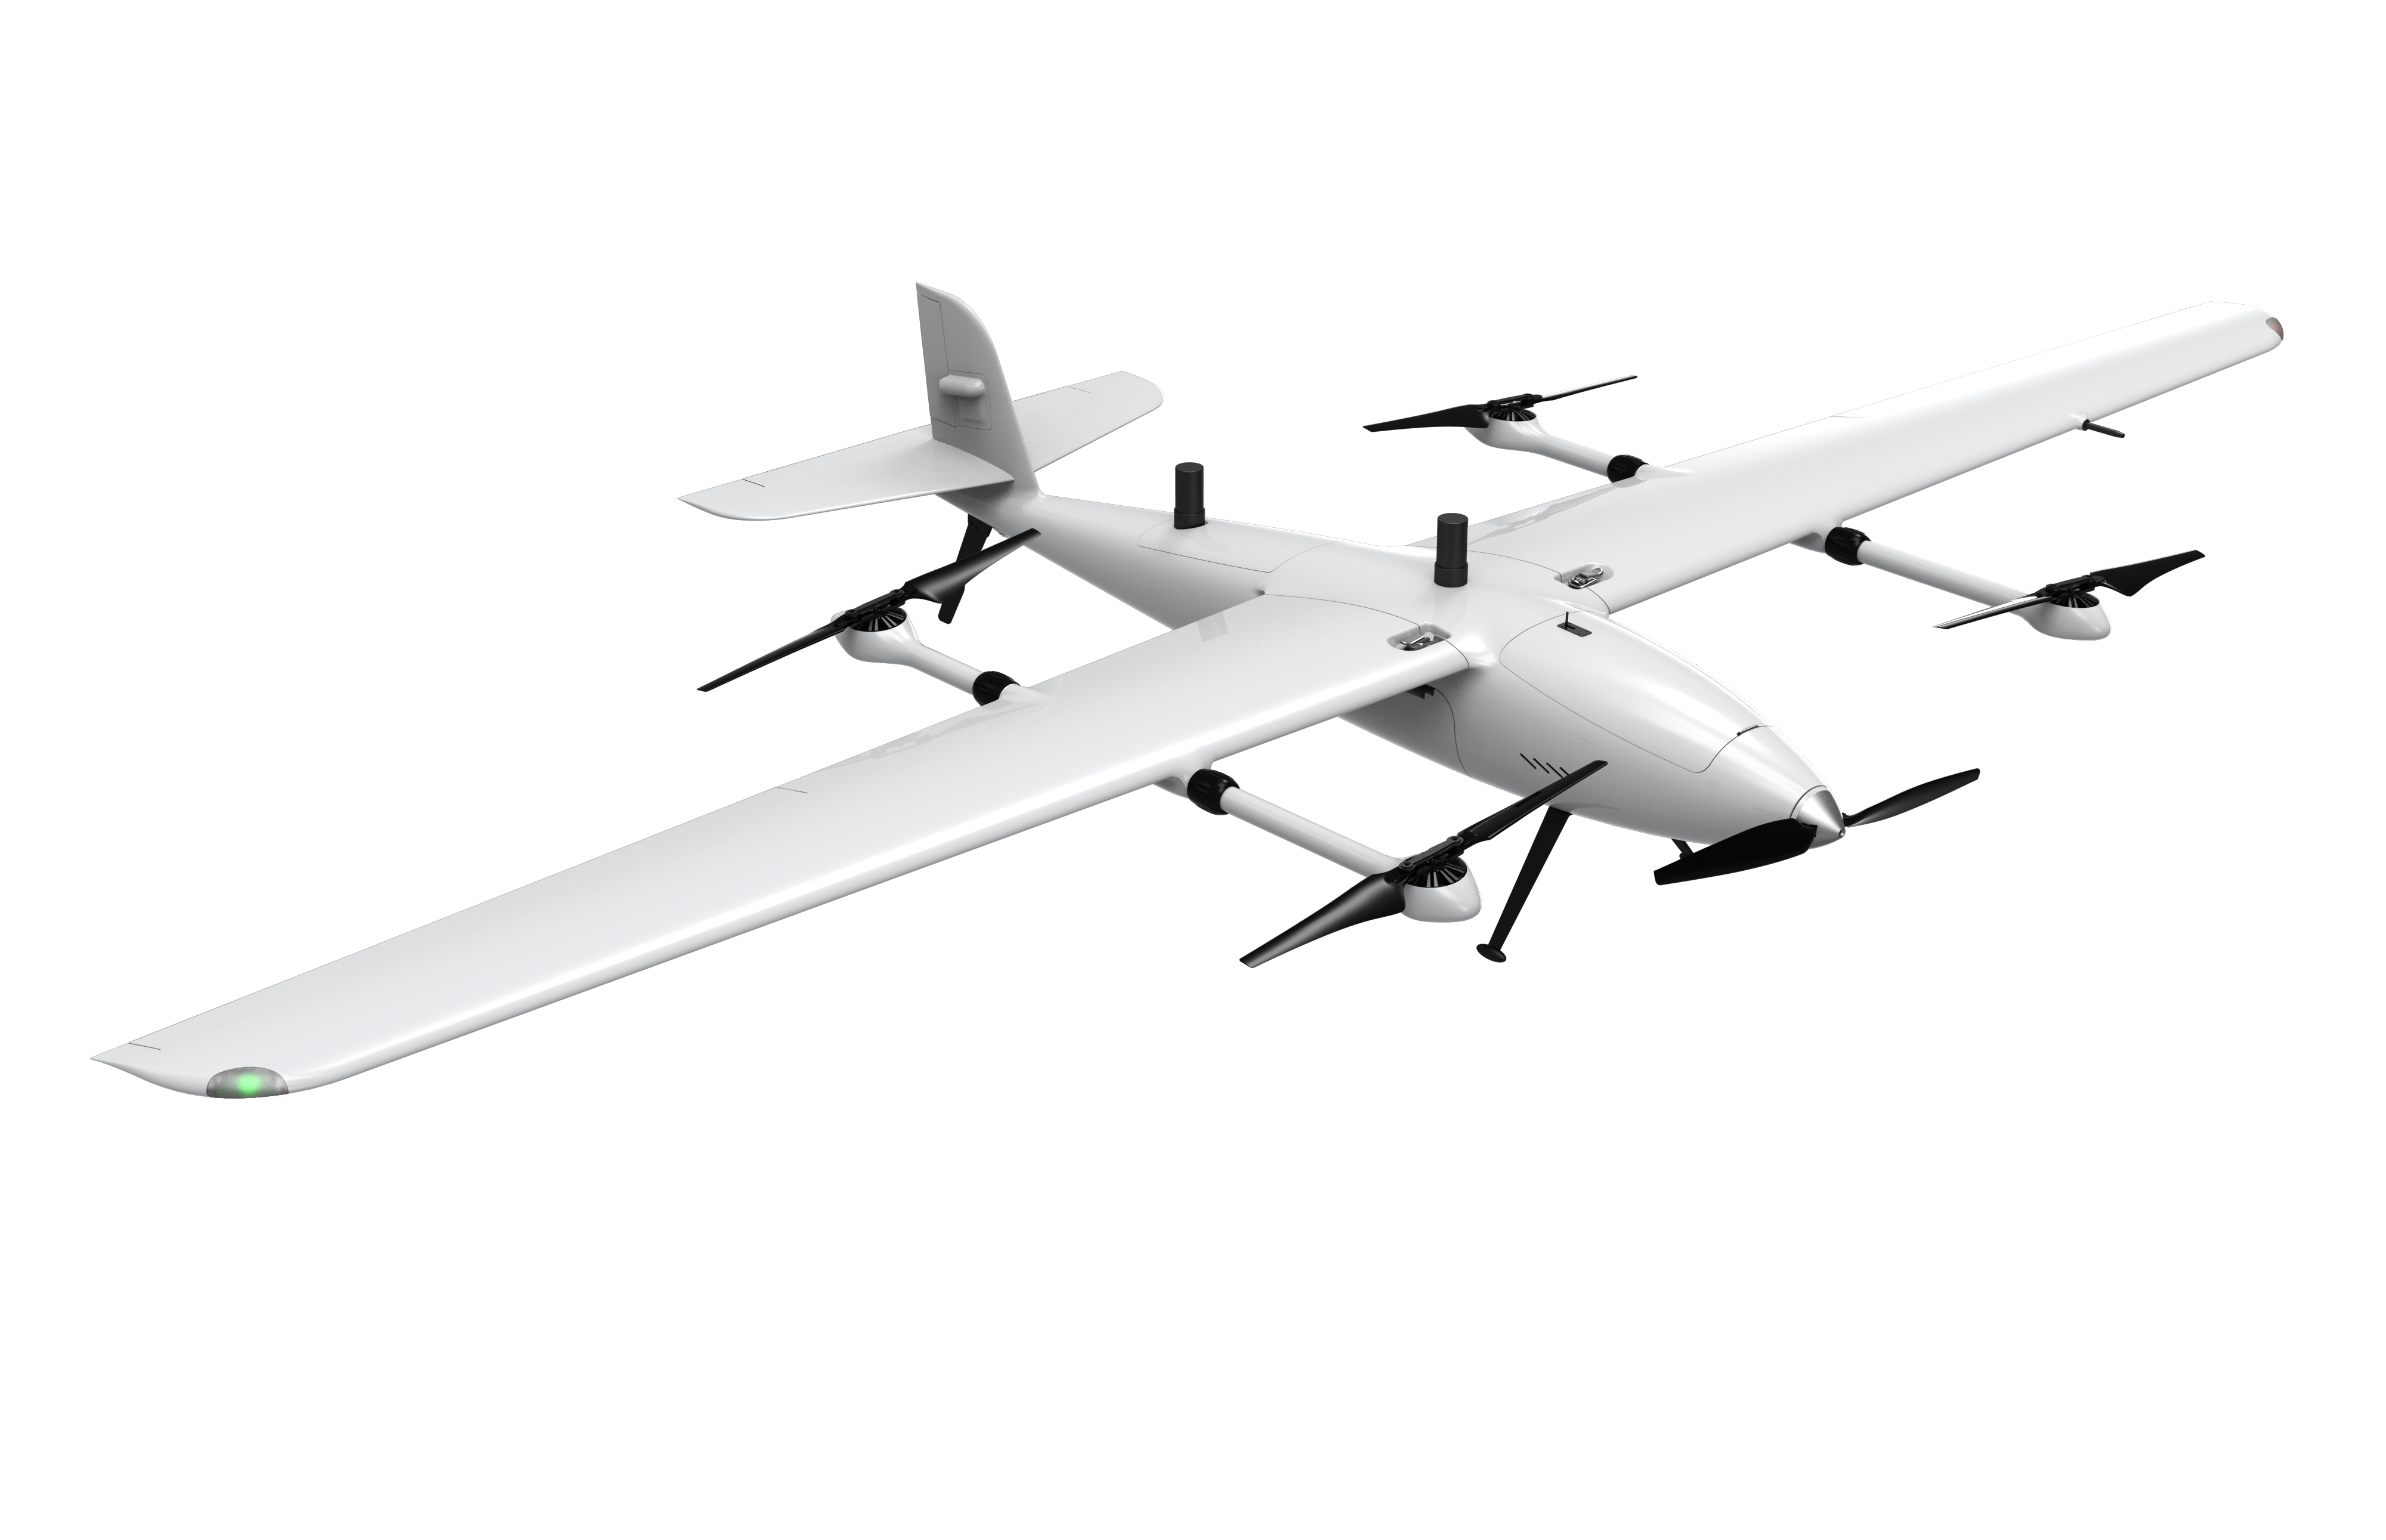 G7垂直起降固定翼无人机安防版-深圳市高远无人机有限公司